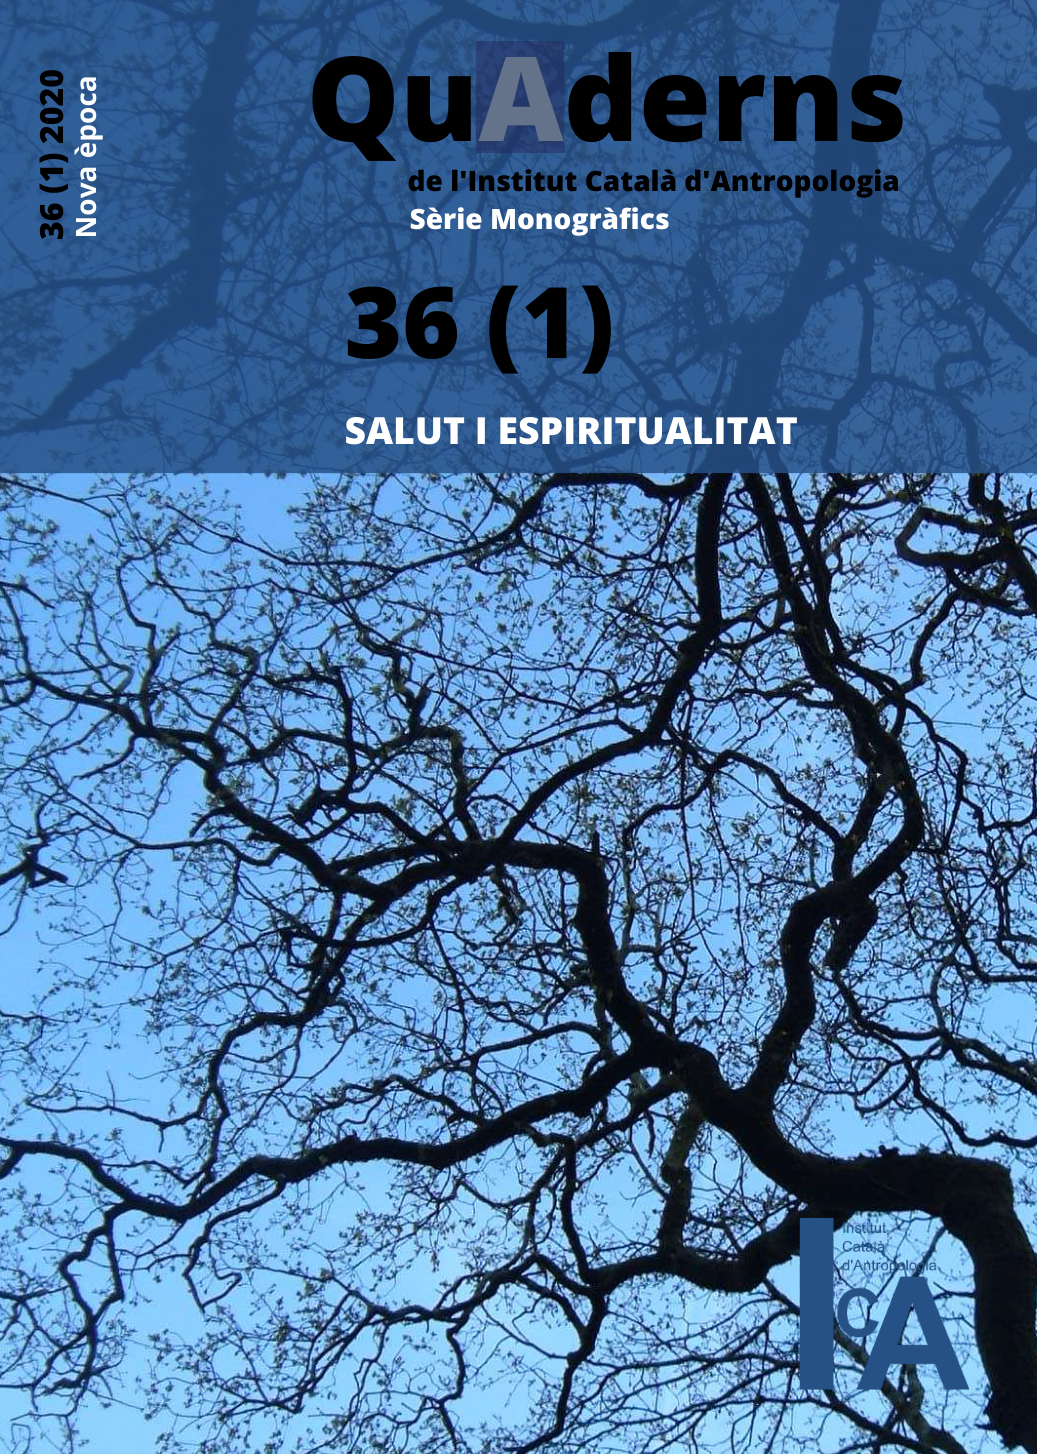 					Veure No 36 (1) (2020): Salut i espiritualitat
				